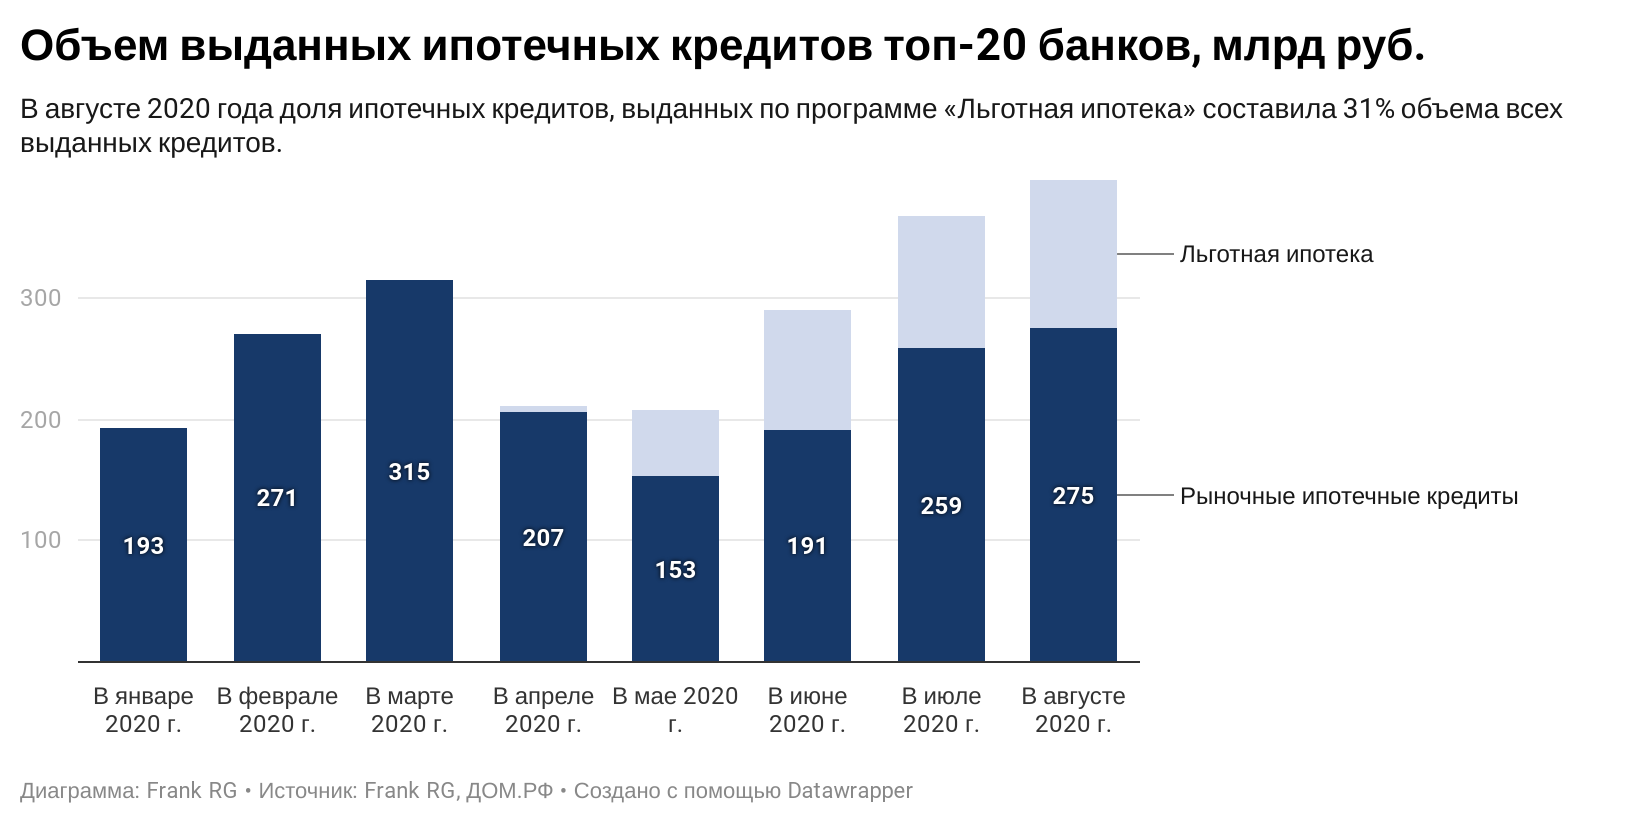 В россии началась первая цифровая перепись населения. как «ростелеком» потратит на нее 9 миллиардов / сnews